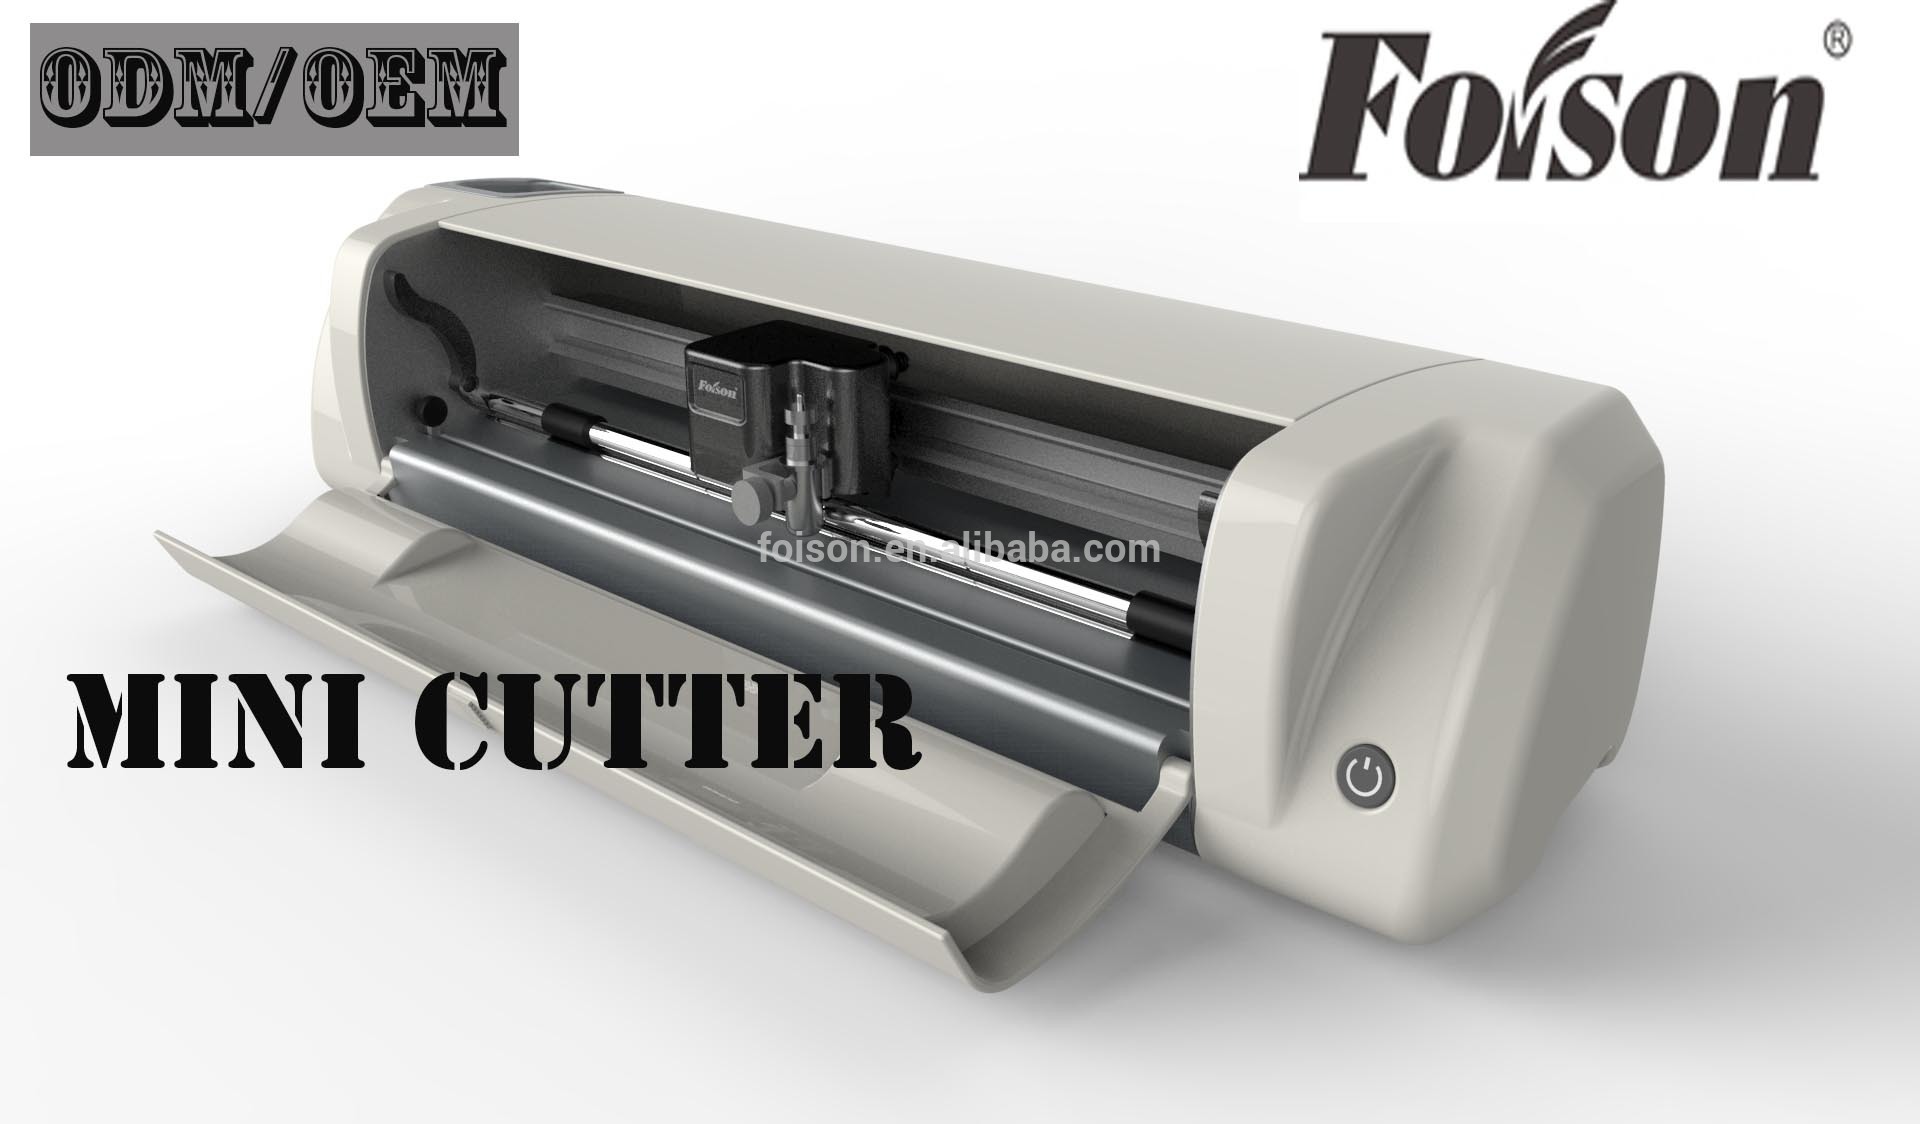 Foison C48 Vinyl Cutter Driver